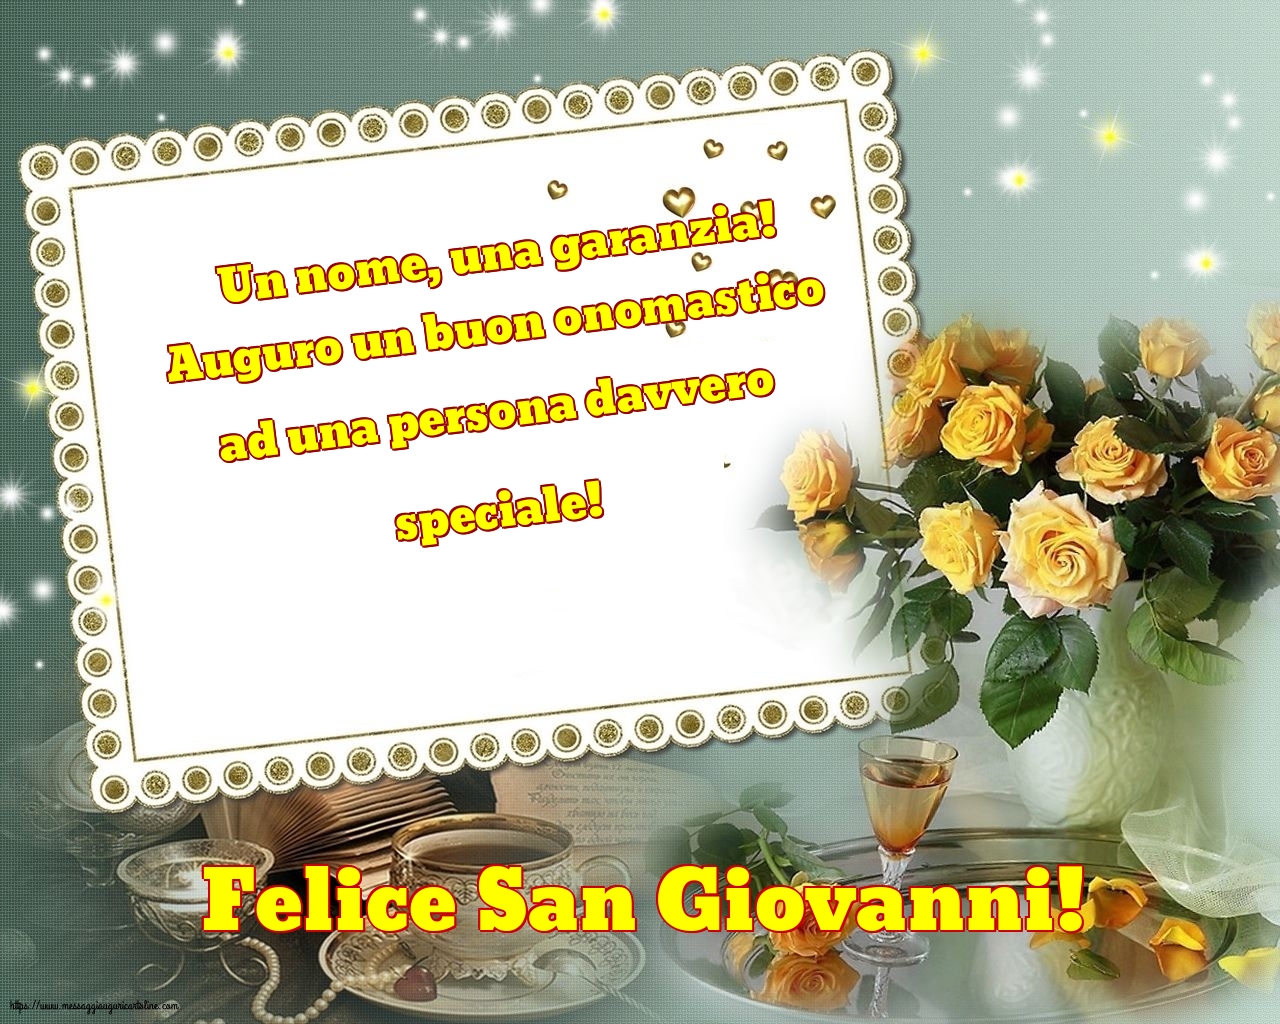 Felice San Giovanni!